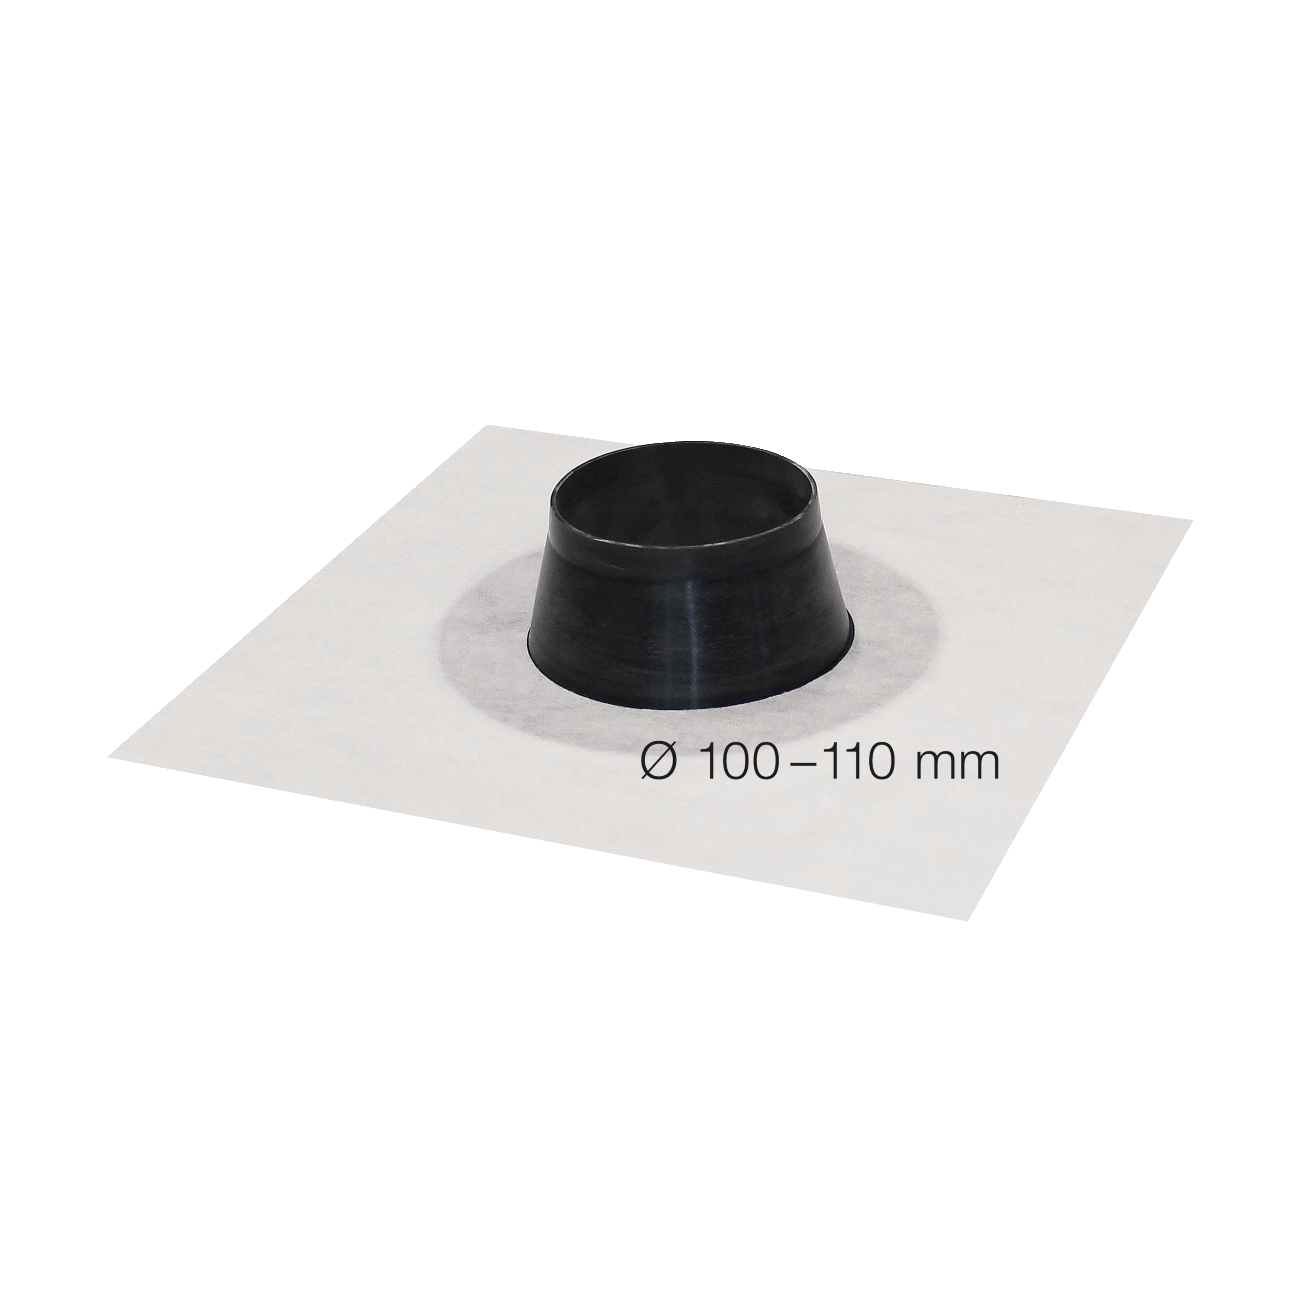 SIGA Fentrim Manschette weiß Durchmesser 100-110mmm, für Rohrdurchdringung